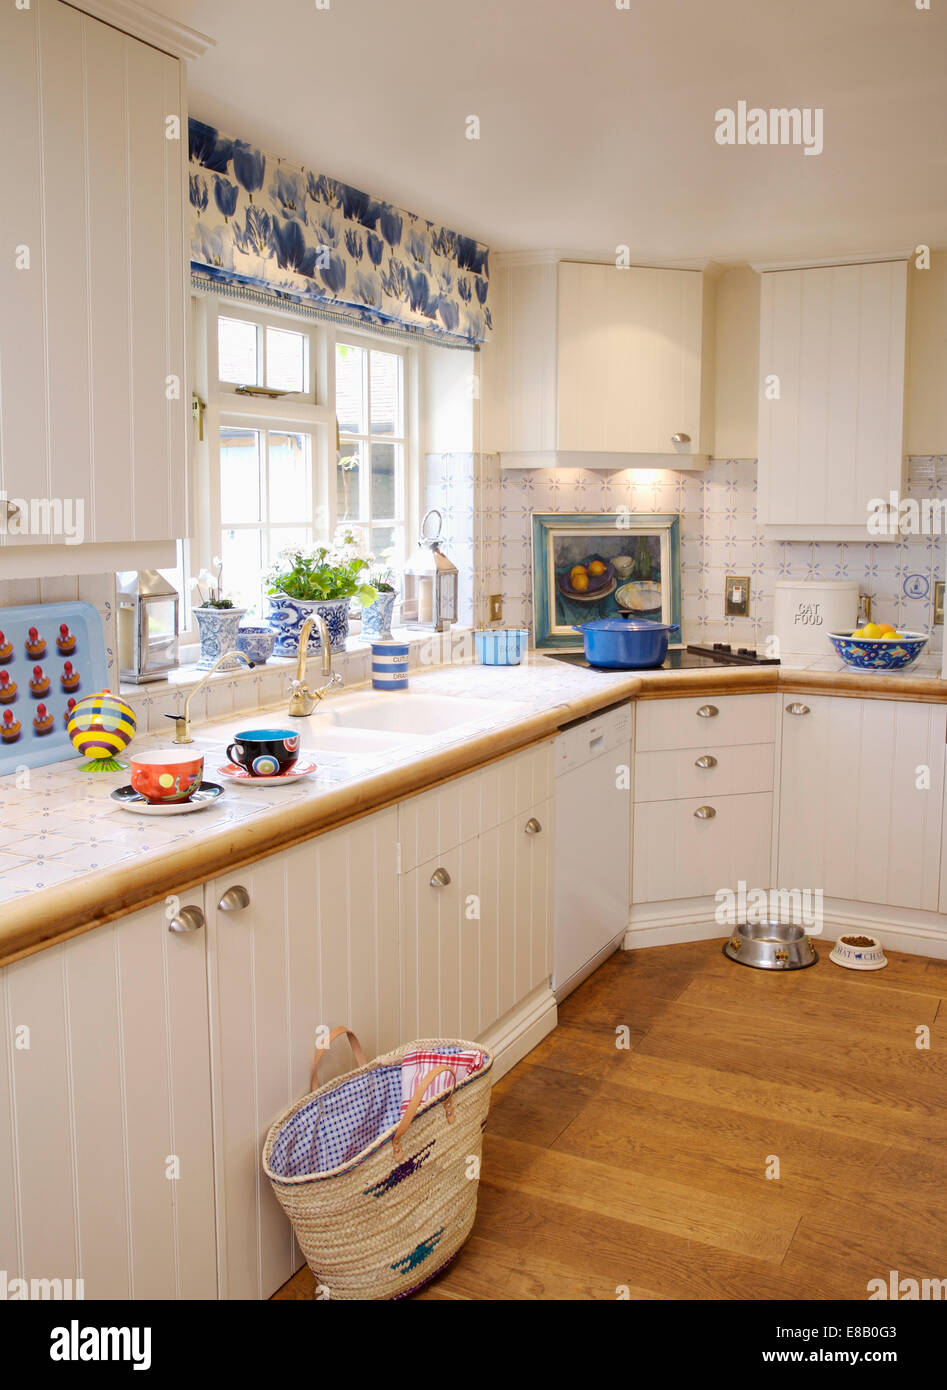 Warenkorb auf Holzboden im Cottage-Küche mit Creme und blau und weiß blind auf Fenster Stockfoto